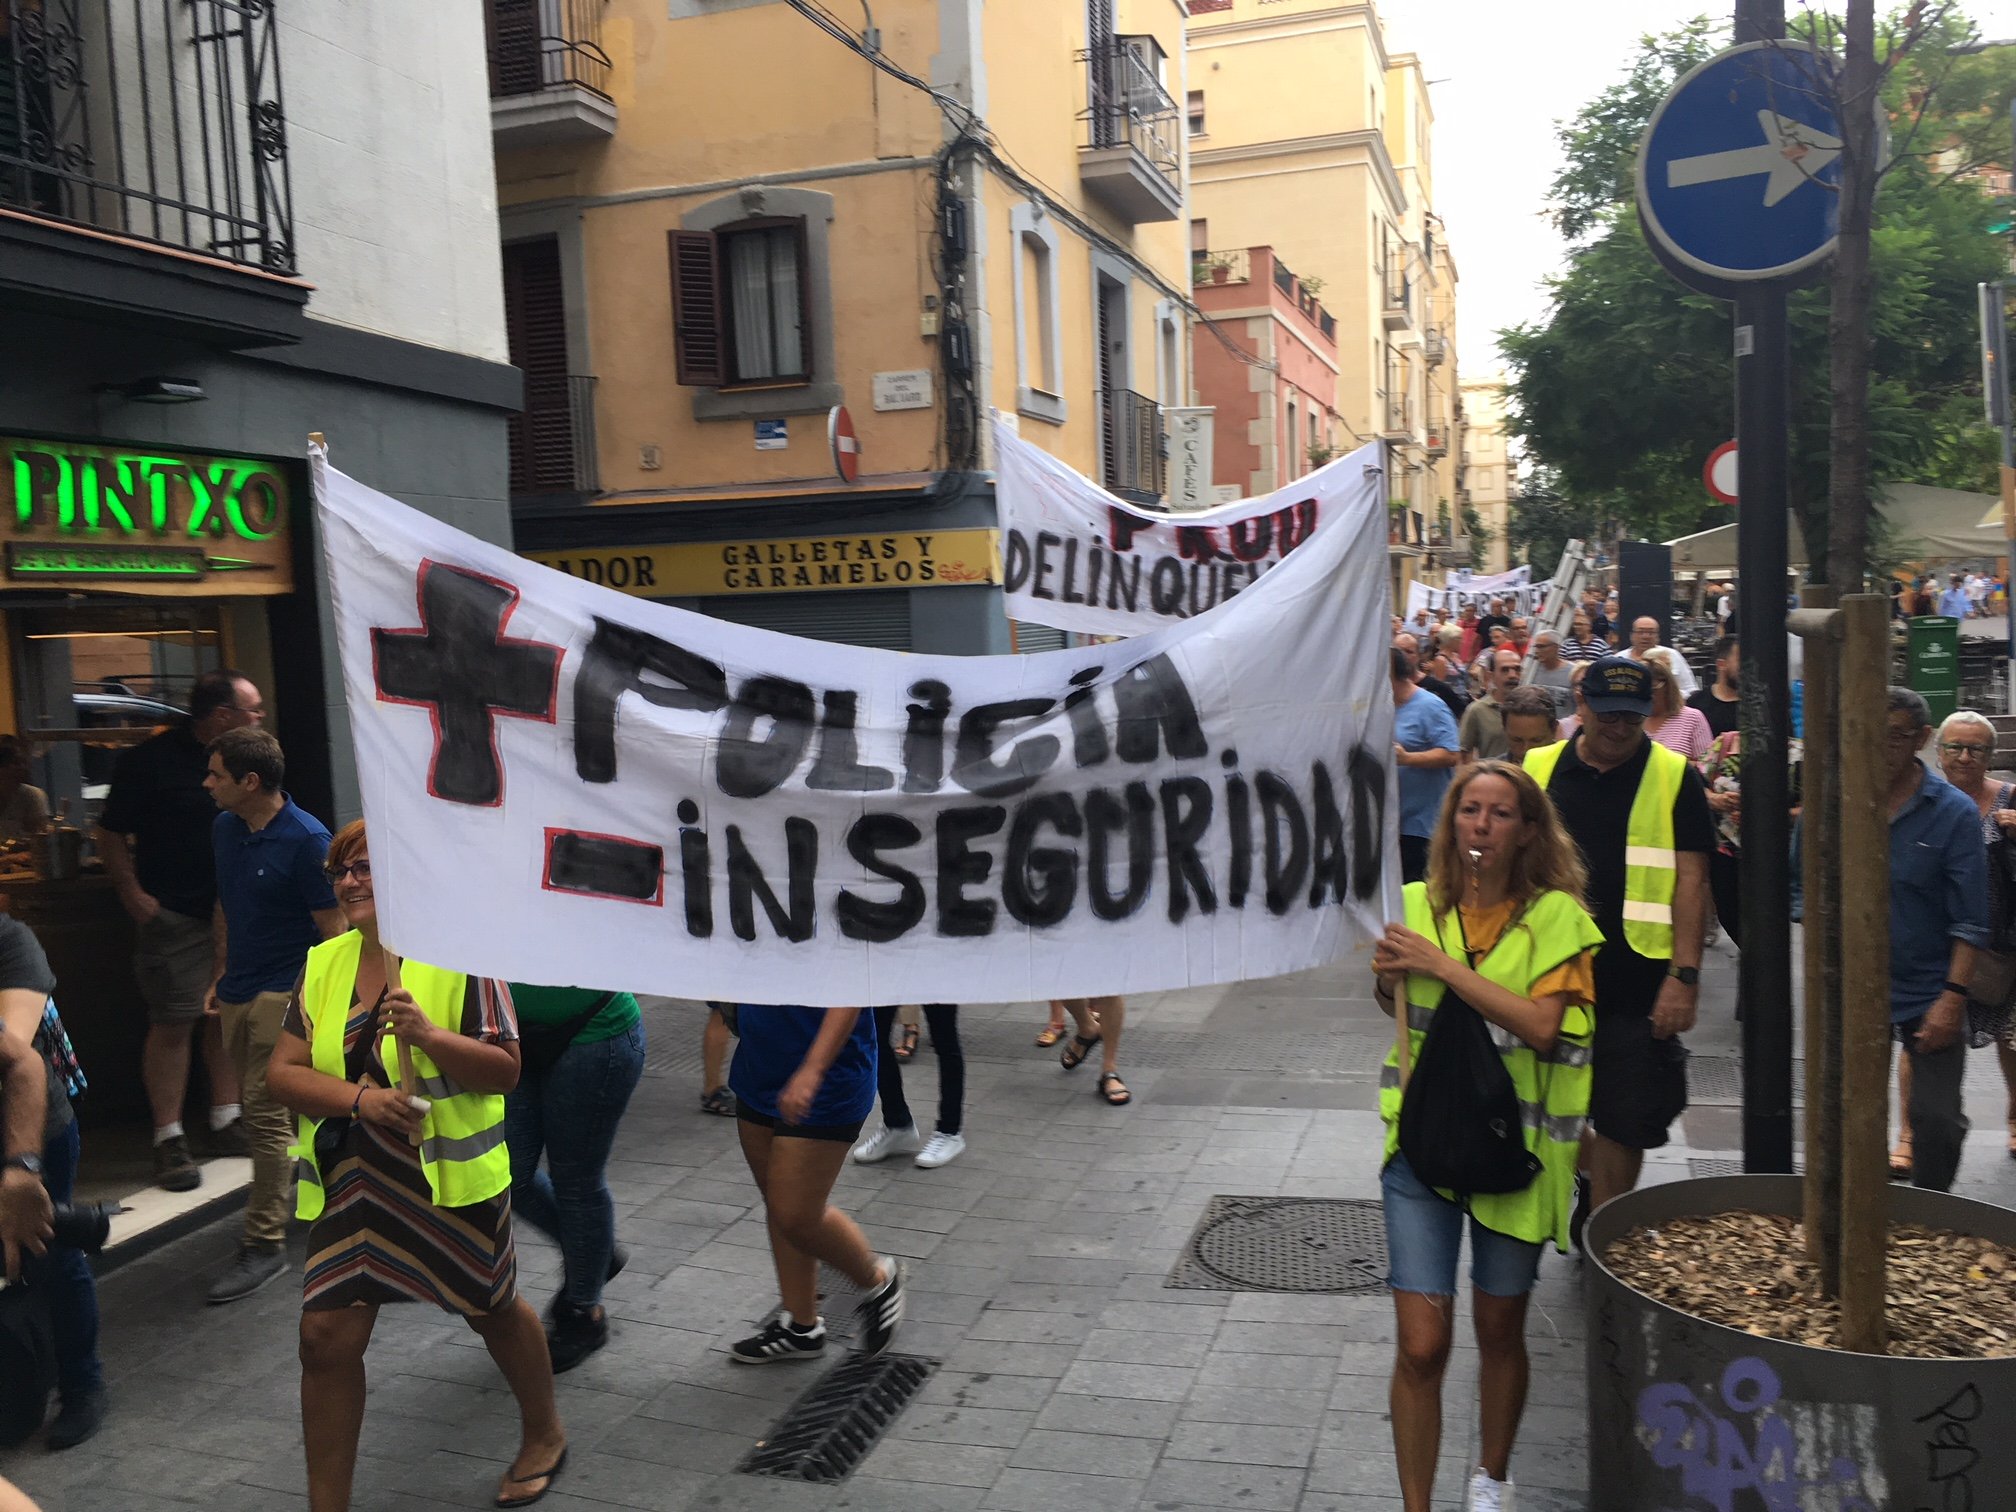 Convocan una manifestación contra Colau con el lema "Barcelona no funciona"